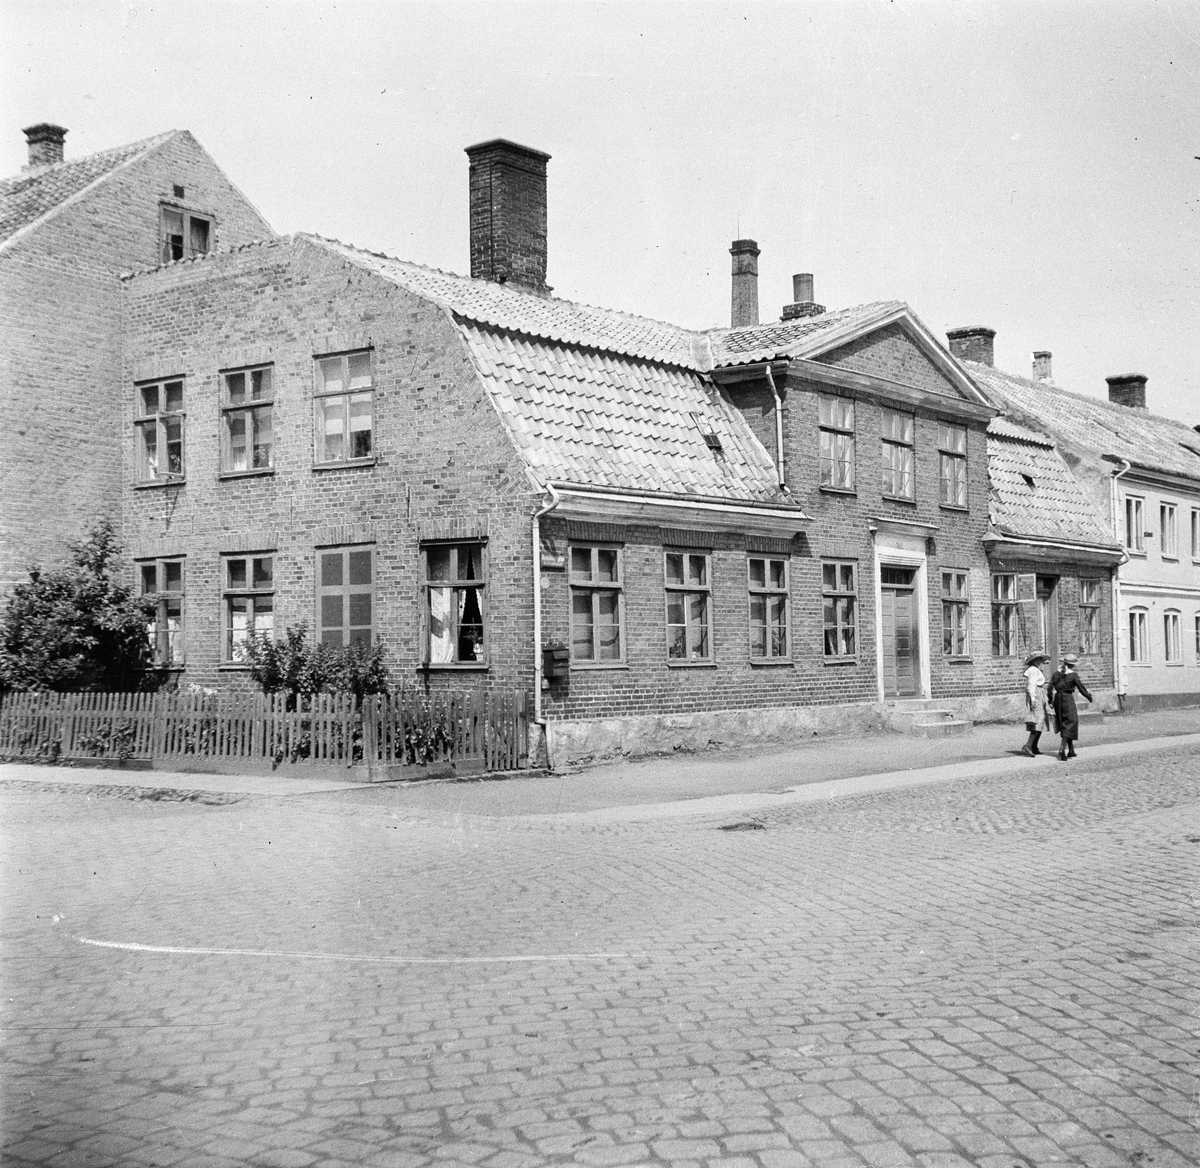 Landskrona, Skåne
Exteriör

Svensk arkitektur: kyrkor, herrgårdar med mera fotograferade av Arkitekturminnesföreningen 1908-23.